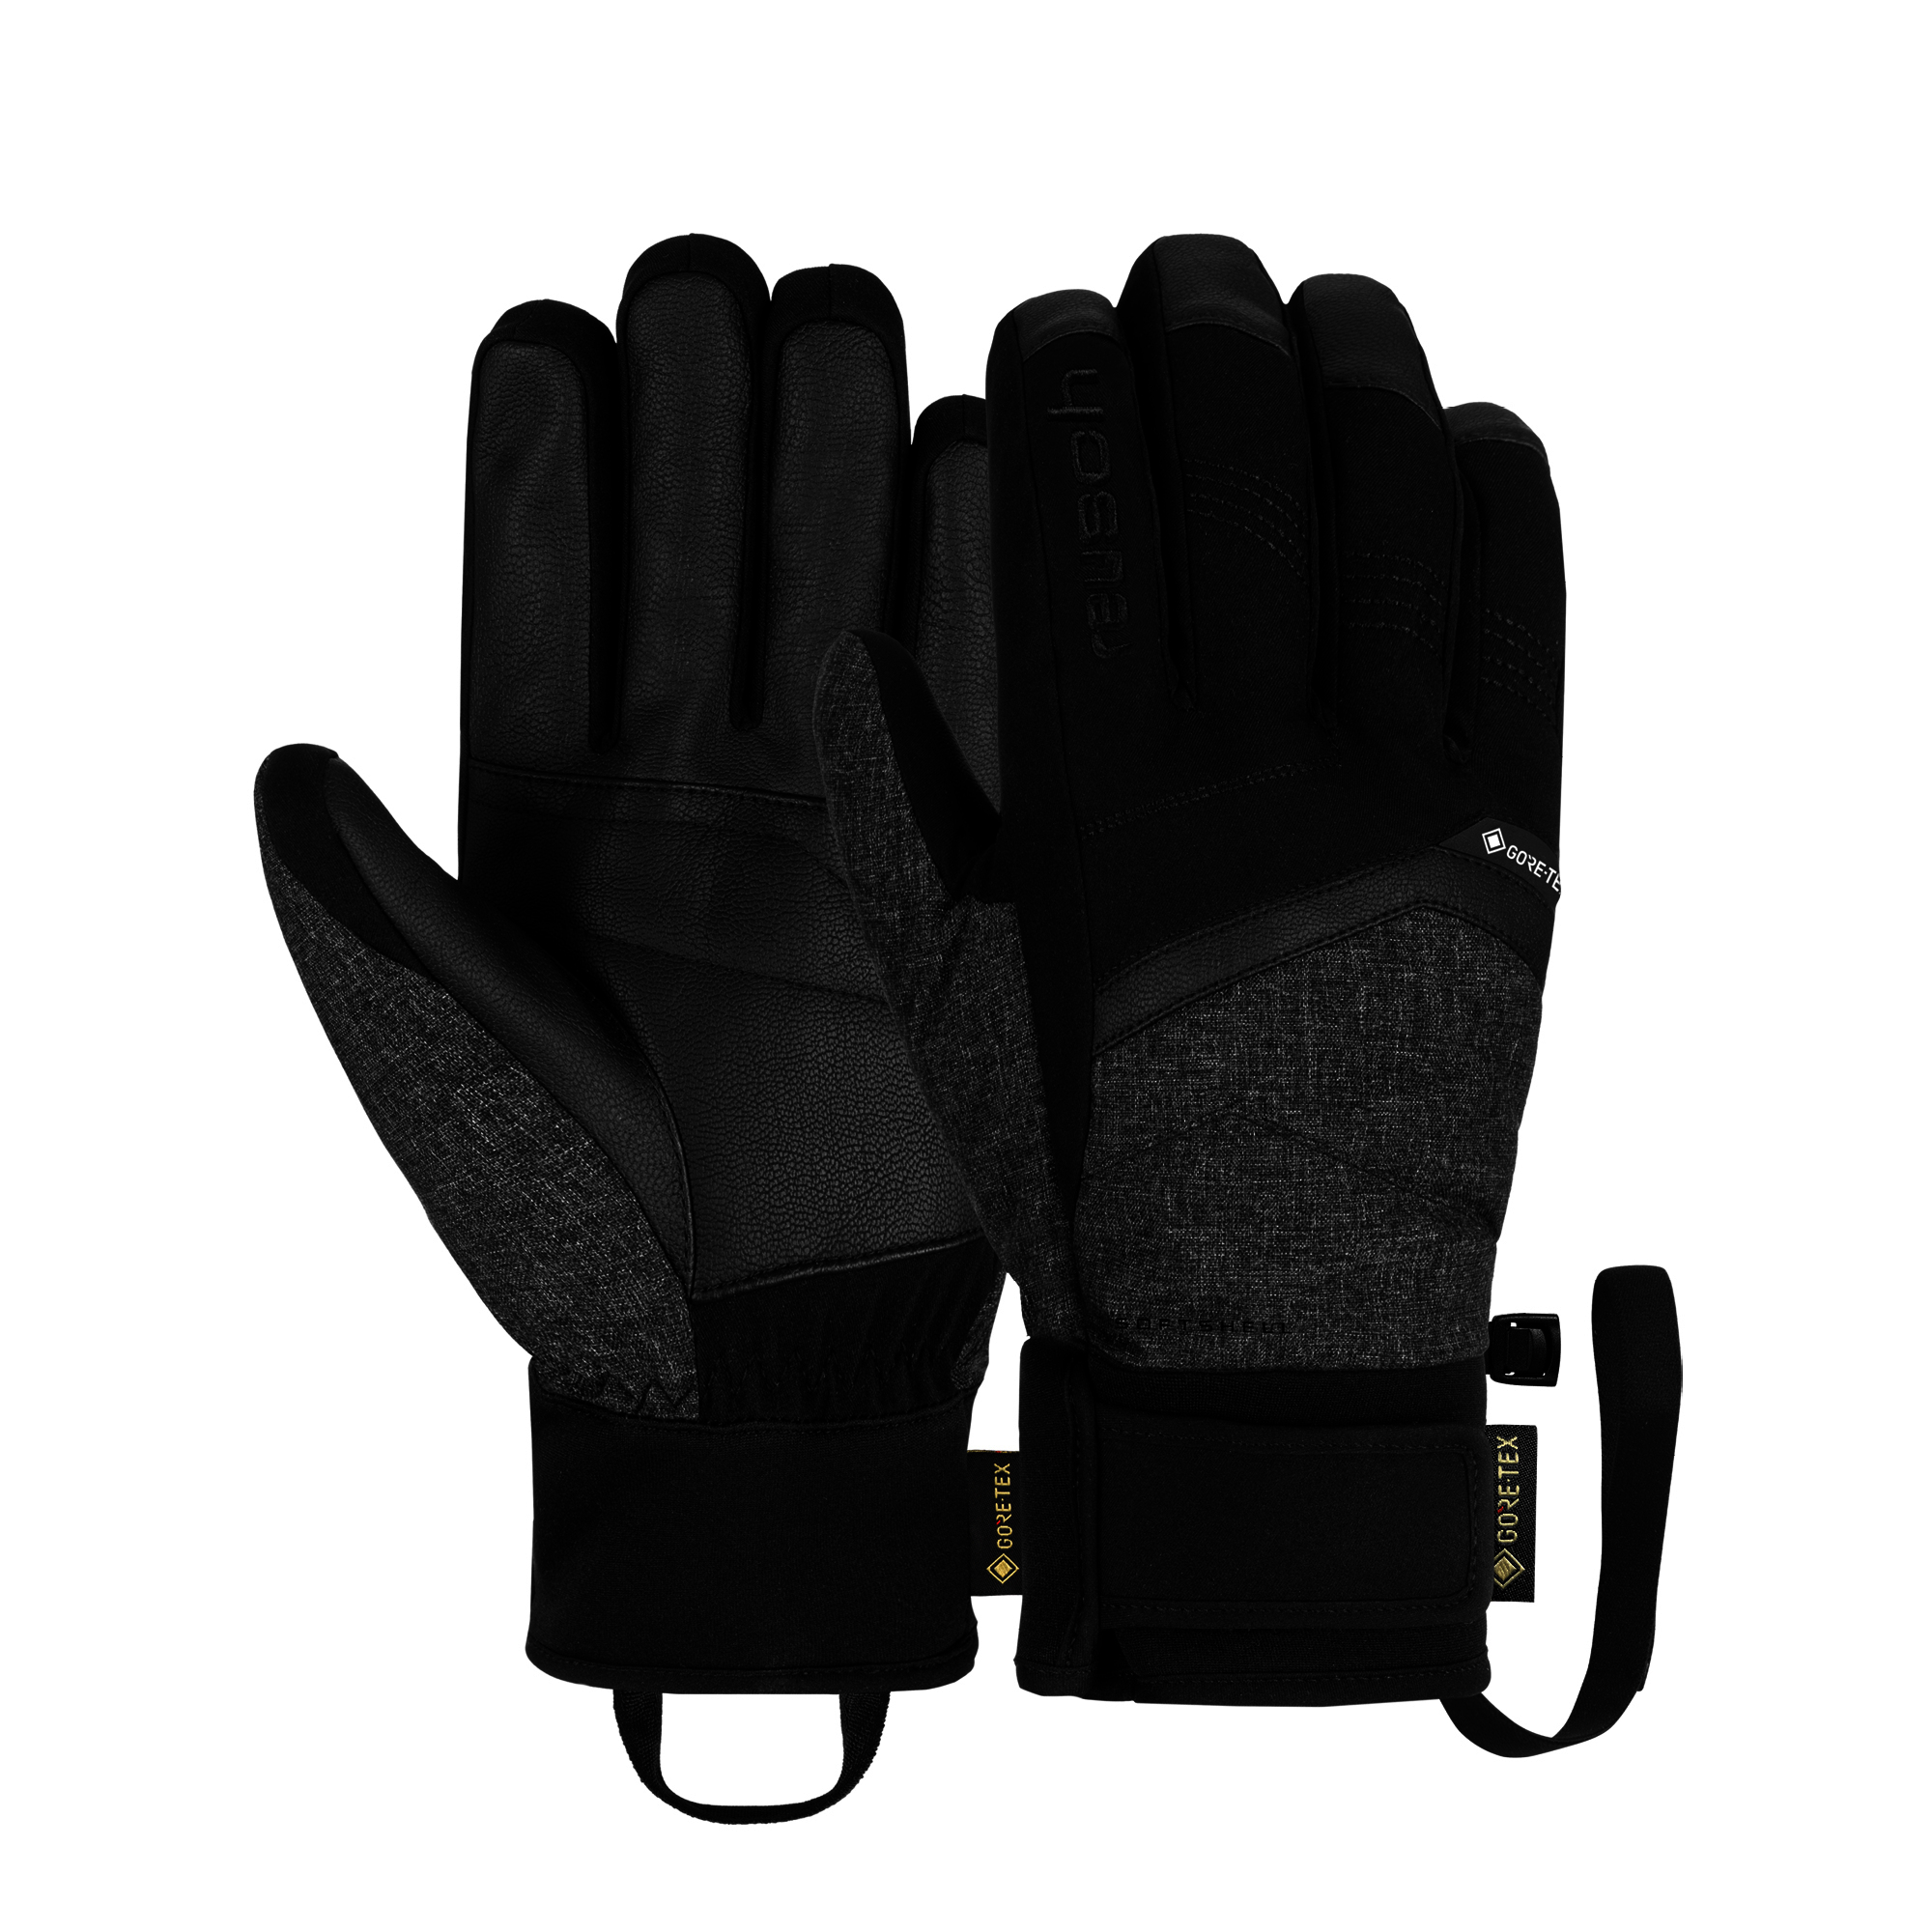 Reusch Blaster GOR-TEX Gents Ski Glove